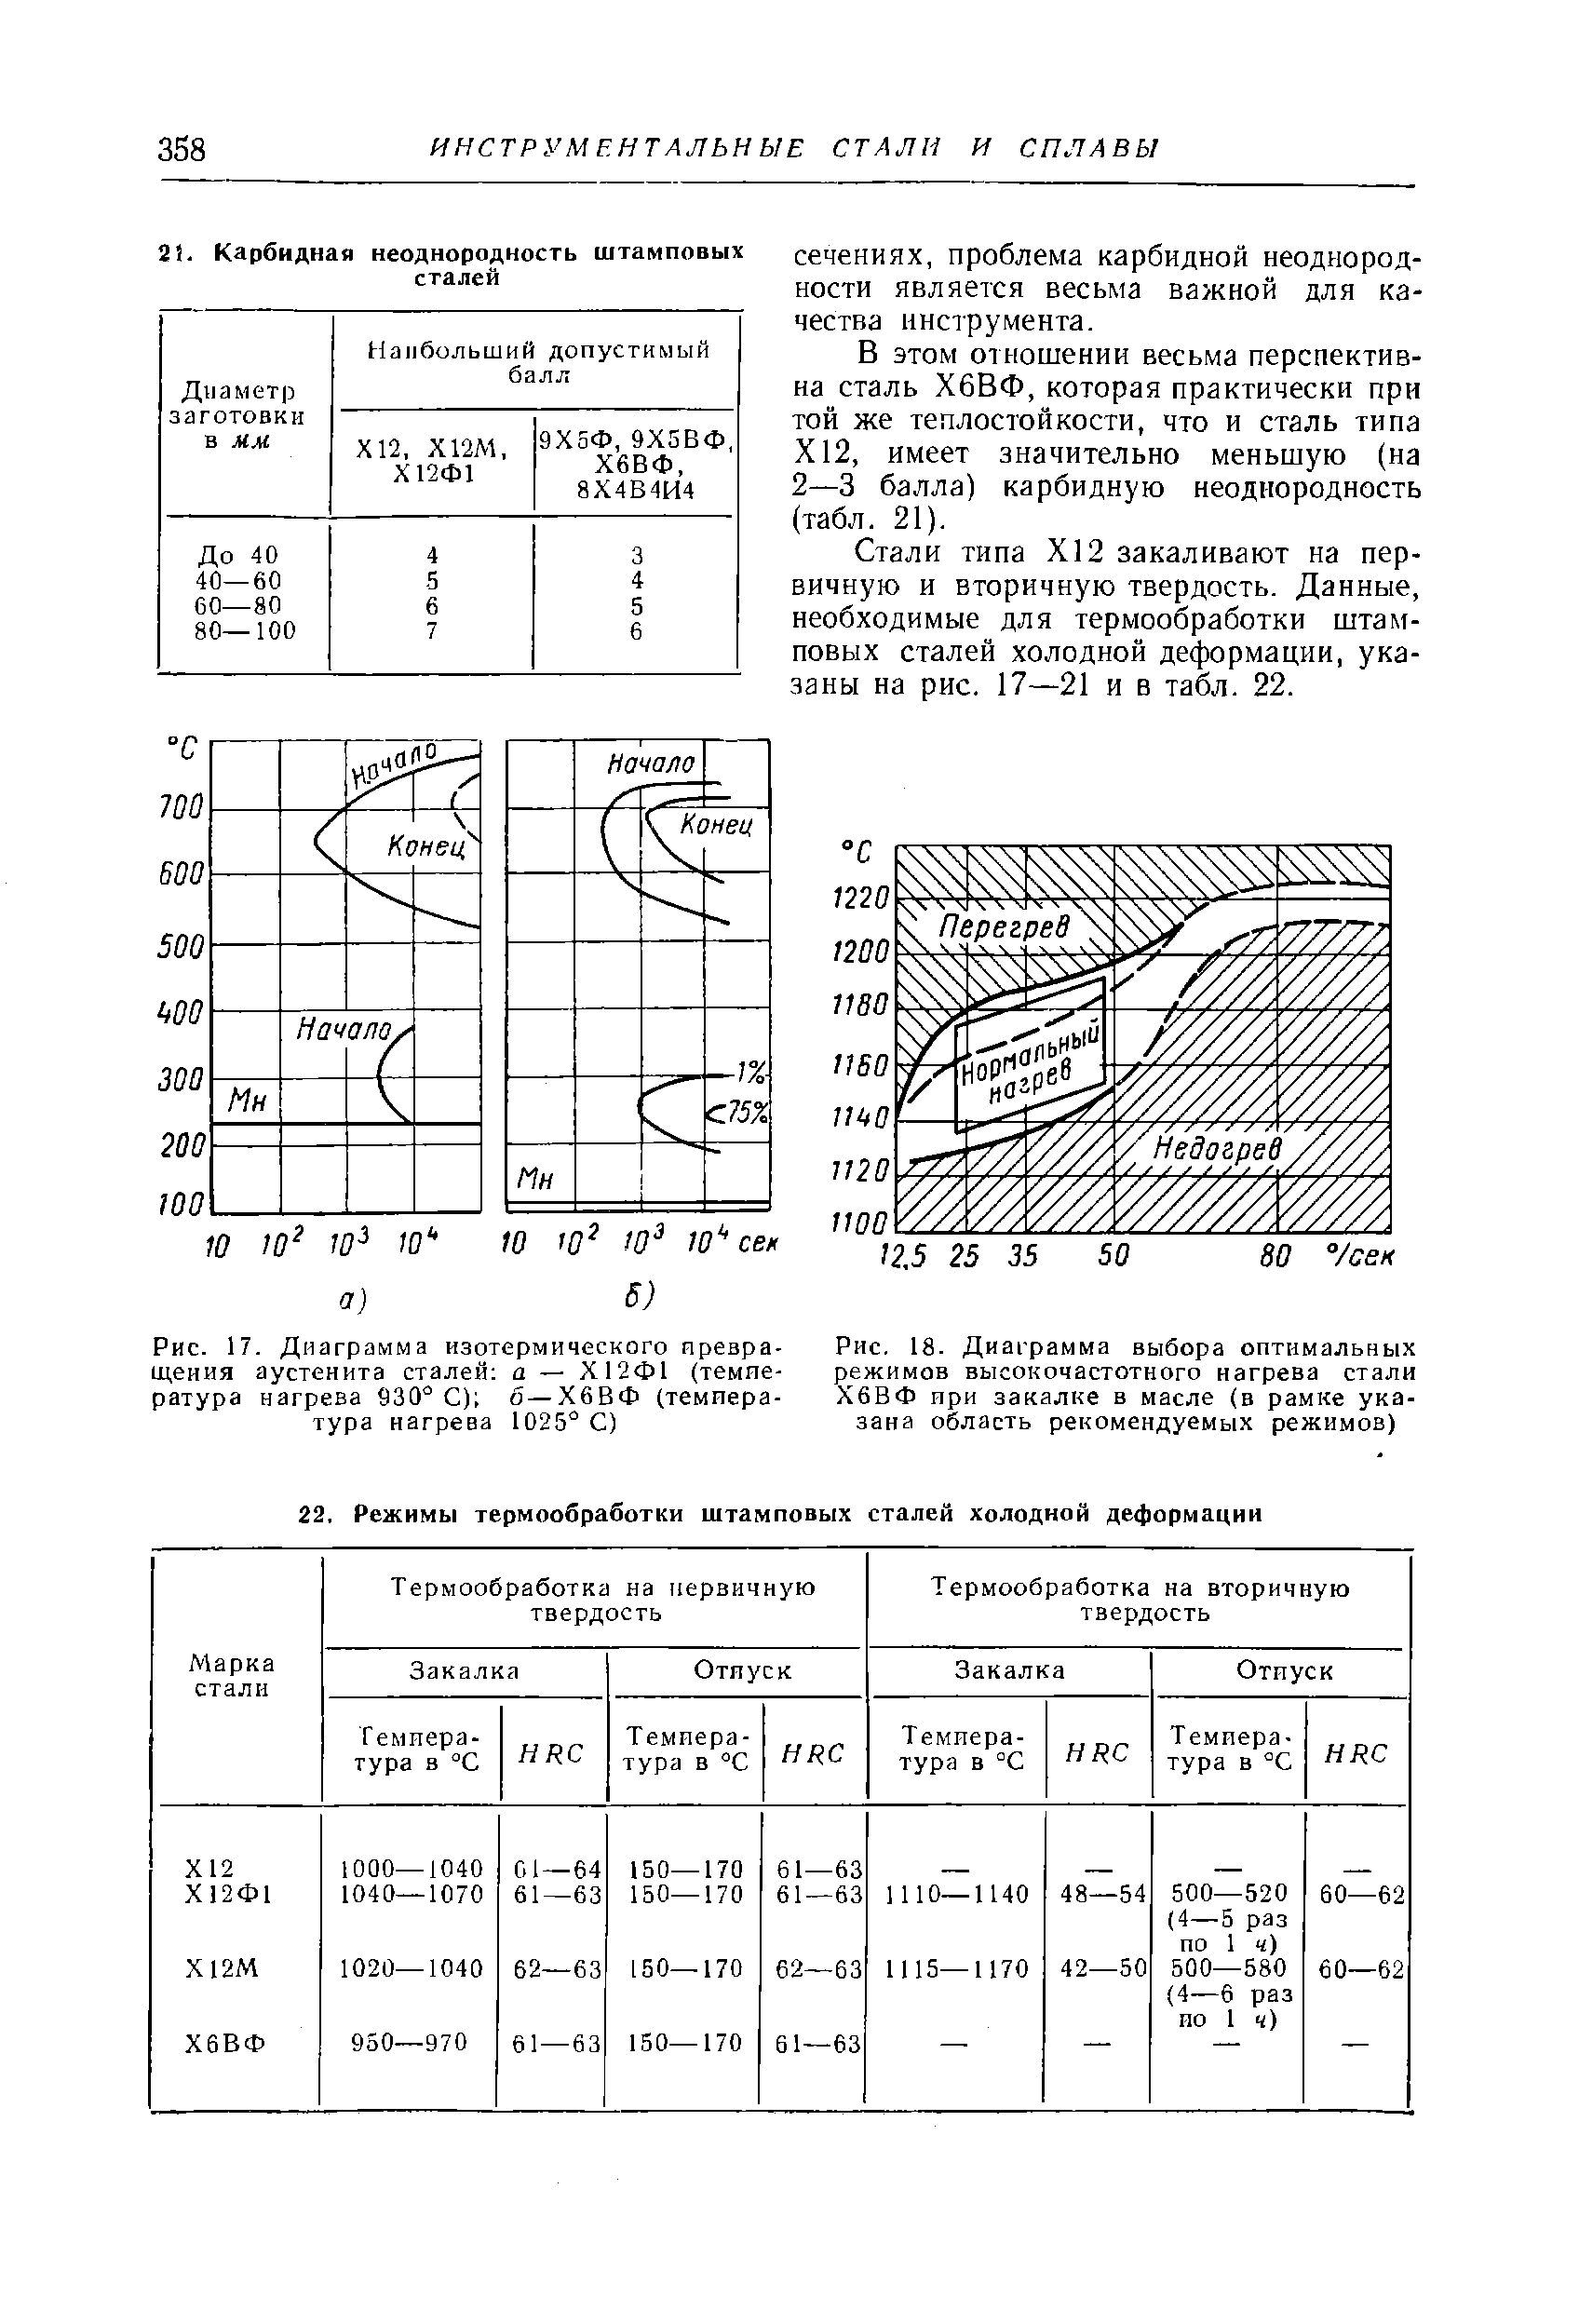 Рис. 17. Диаграмма изотермического превращения аустенита сталей а — Х12Ф1 (температура нагрева С) б—Х6ВФ (температура нагрева 1025 С)
